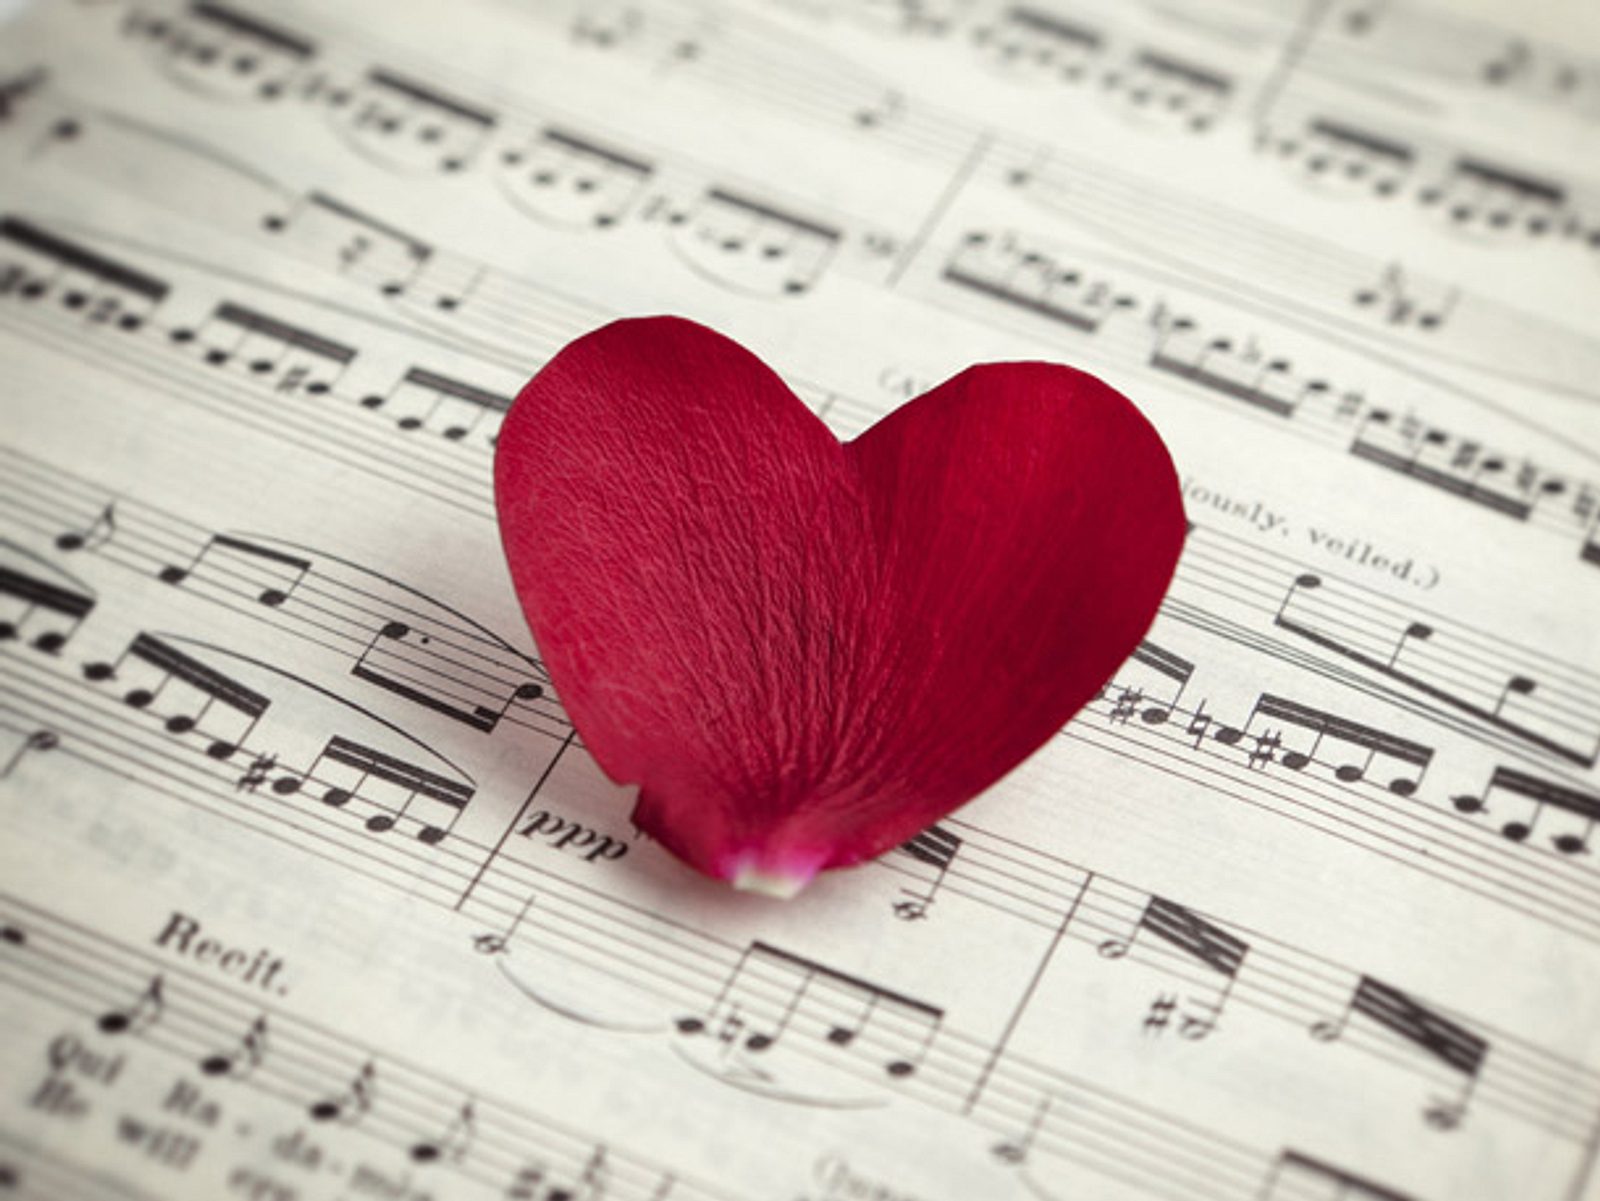 Любимая мелодия на телефон. Музыка любви. Красивые картинки про любовь. Романтично и музыкально. Композиция "это любовь".